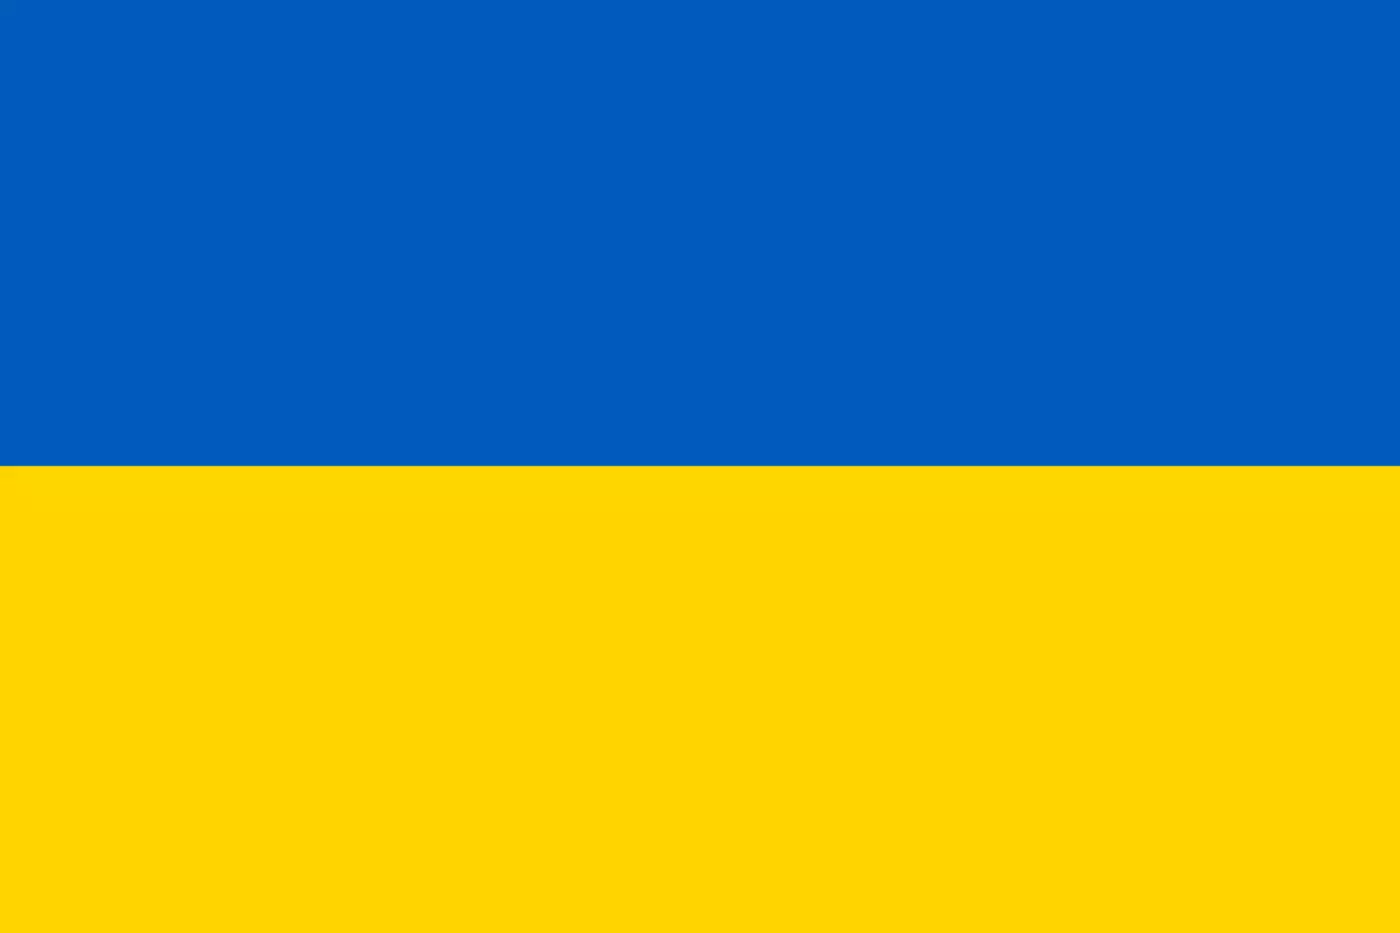 #StandWithUkraine - Eine Solidaritätsveranstaltung für die Bevölkerung in der Ukraine